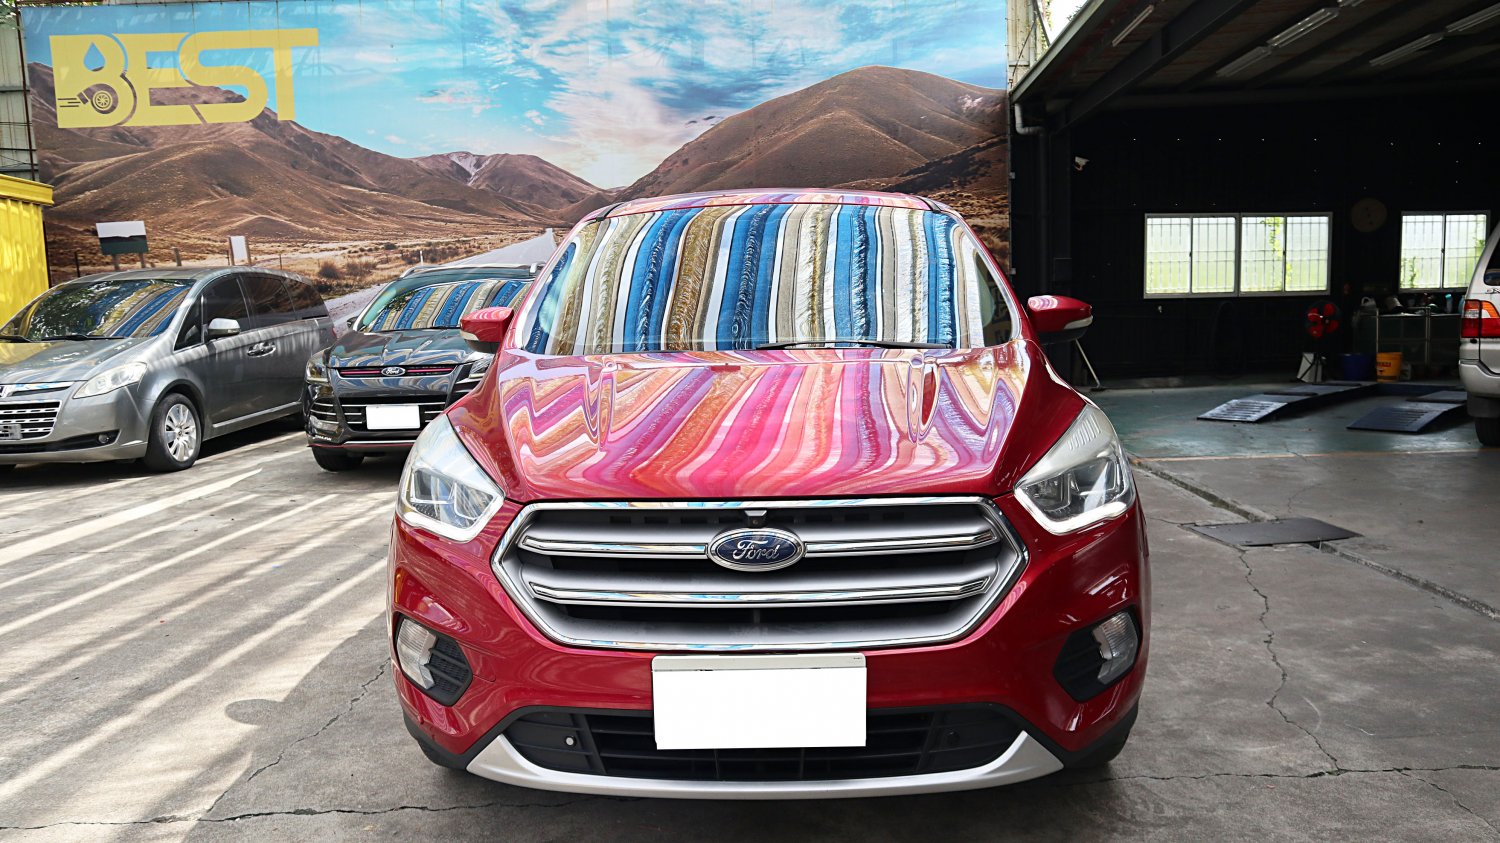 Ford 福特 ／ Kuga ／ 2018年 ／ 2018年 Ford Kuga 紅色 福特中古車 ／ 九州欣旺汽車 (台南)